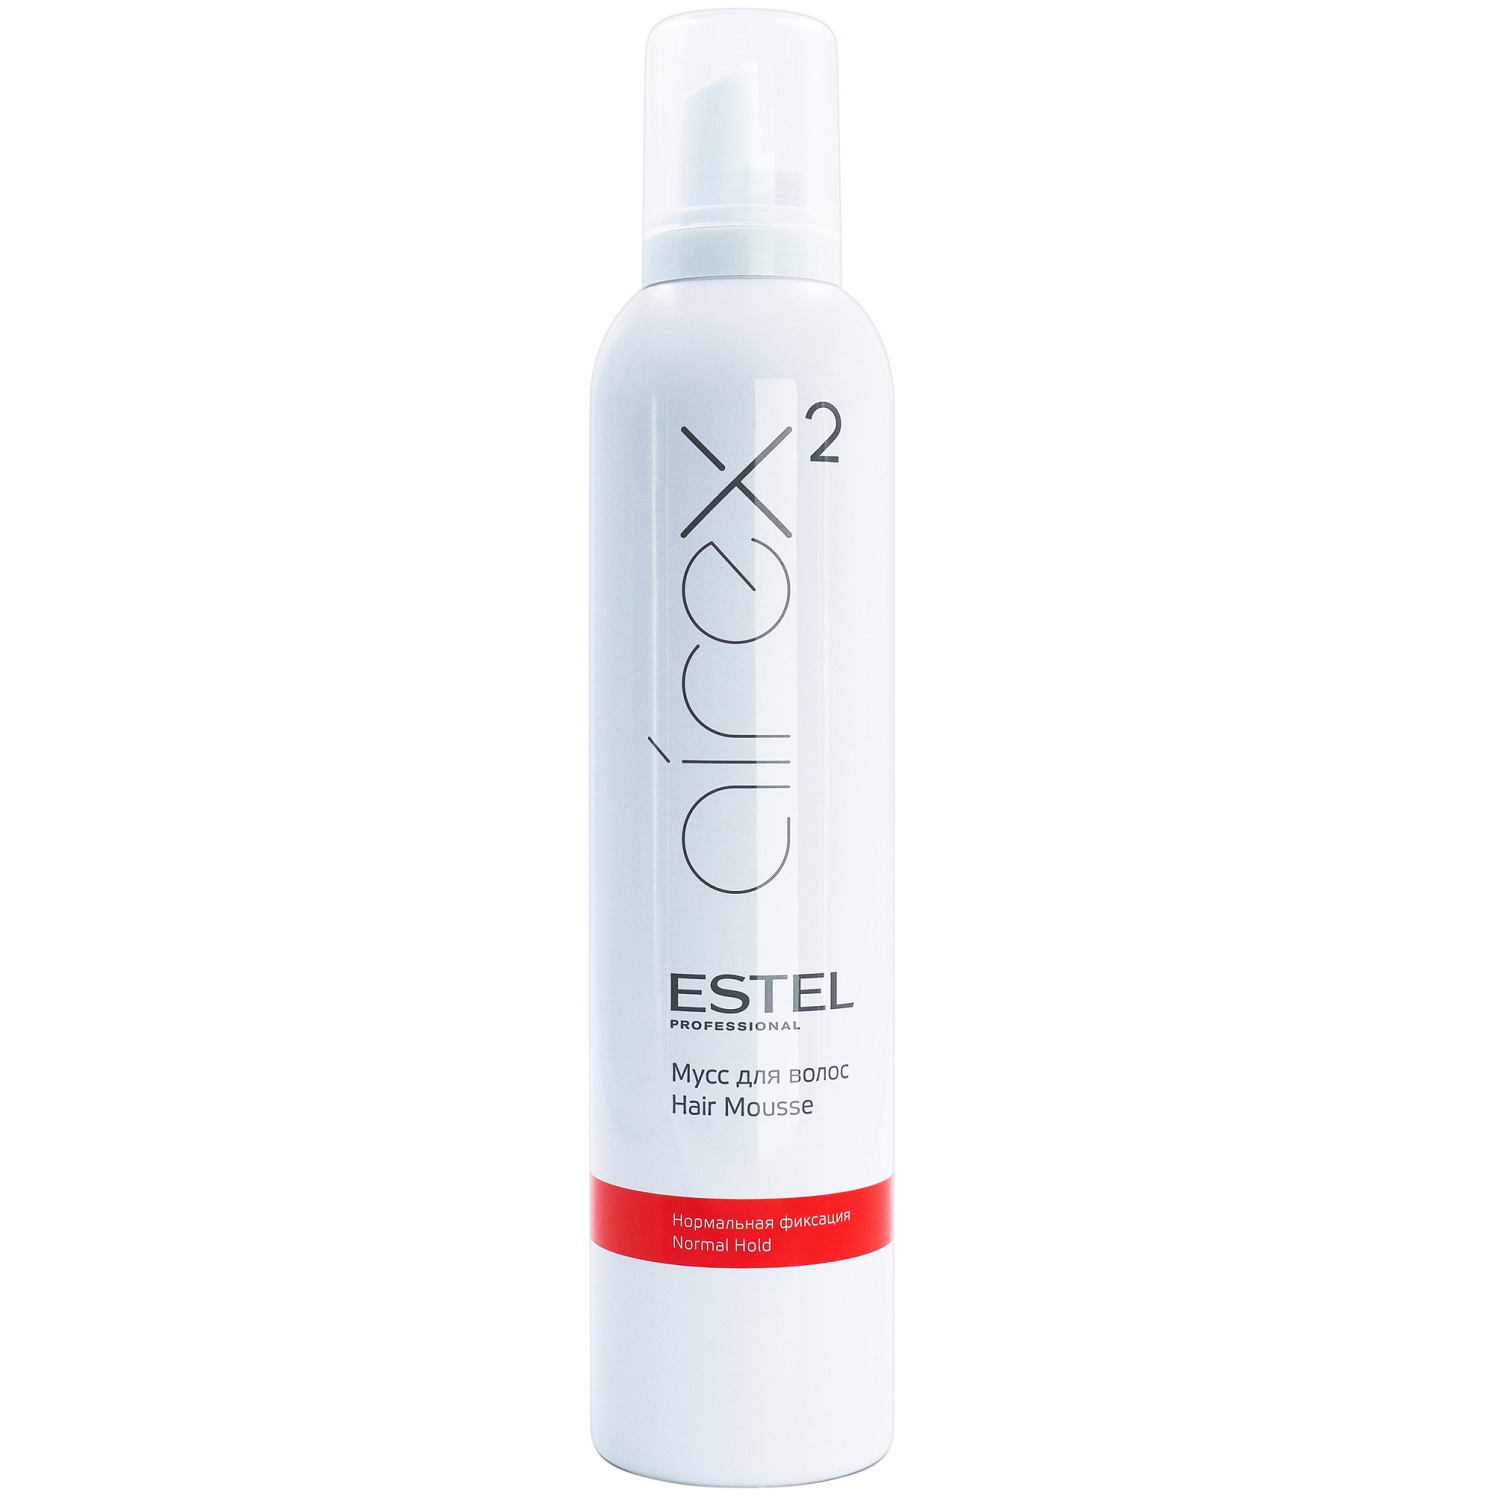 Estel Мусс для волос нормальная фиксация, 300 мл (Estel, Airex) estel глина для моделирования волос с матовым эффектом пластичная фиксация 2 65 мл estel airex